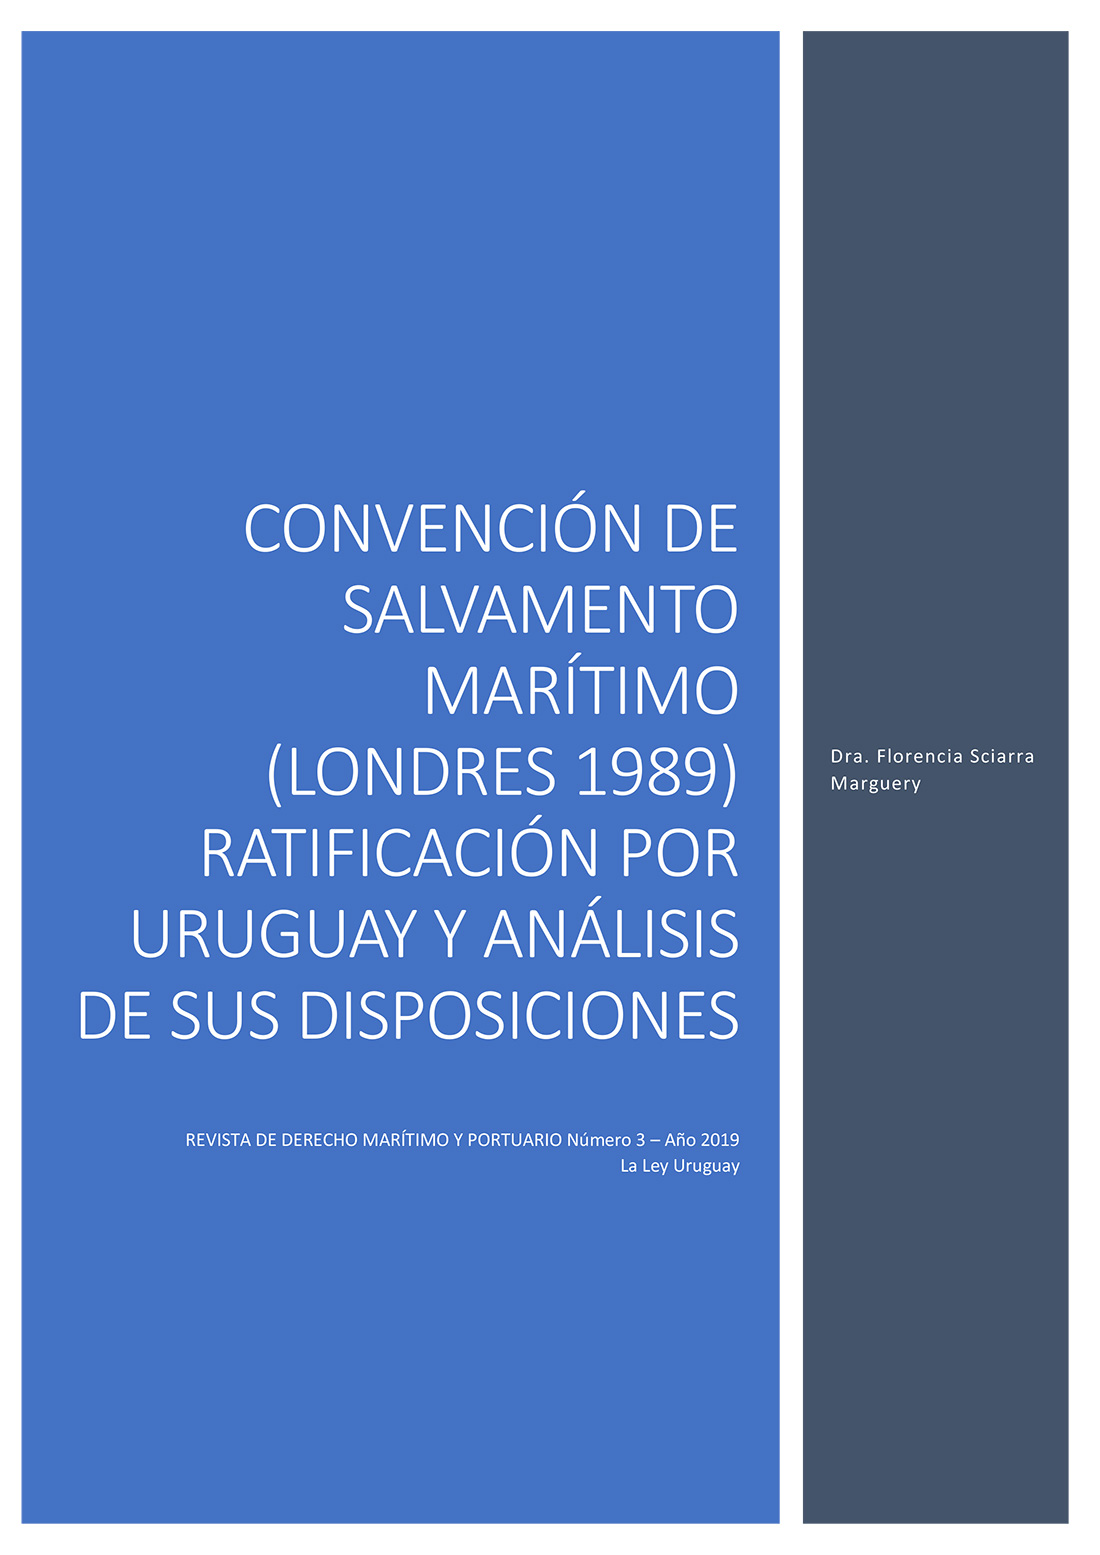 SCIARRA & ASOC CONVENCIÓN DE SALVAMENTO MARÍTIMO (Londres 1989)
Su reciente ratificación por Uruguay y un análisis de sus disposiciones